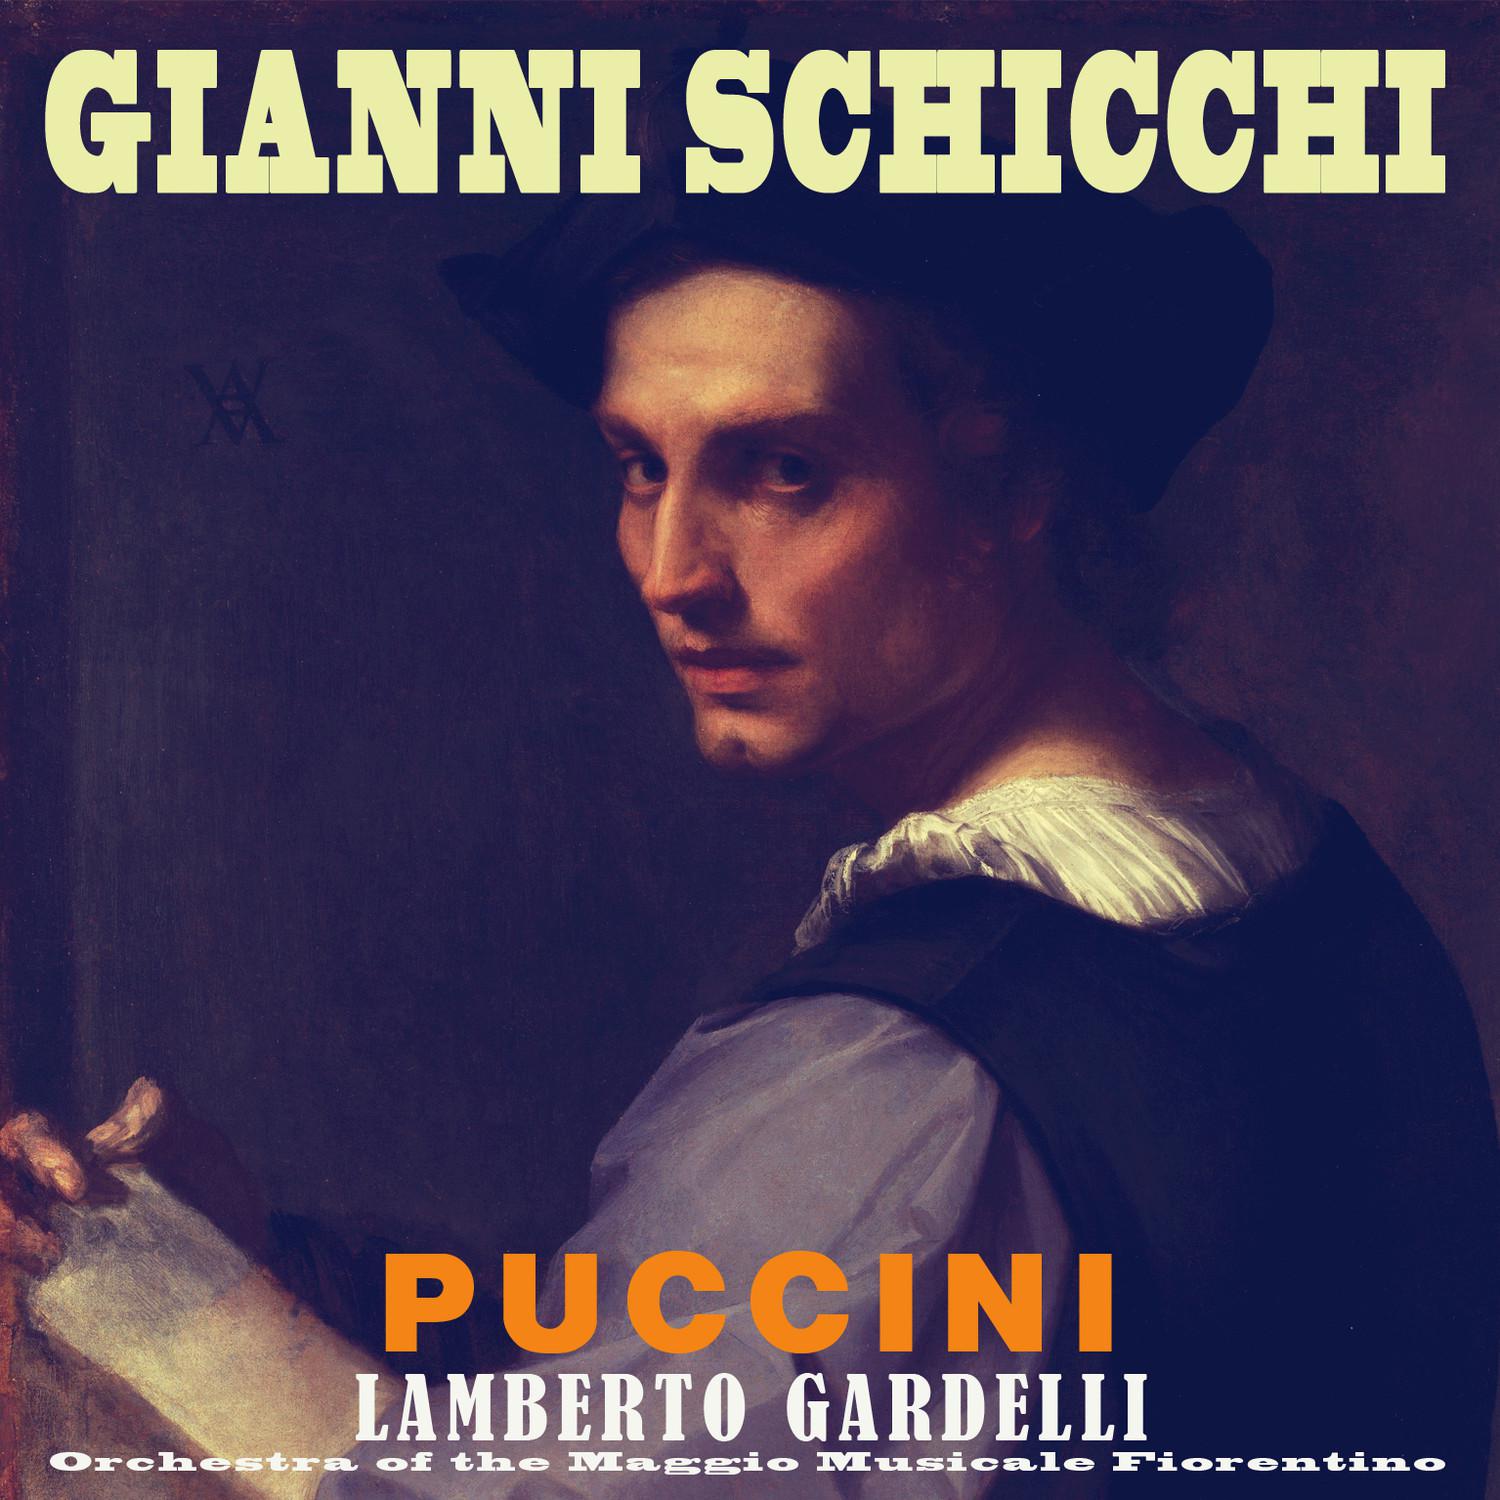 Gianni Schicchi: "Ecco la cappellina!"